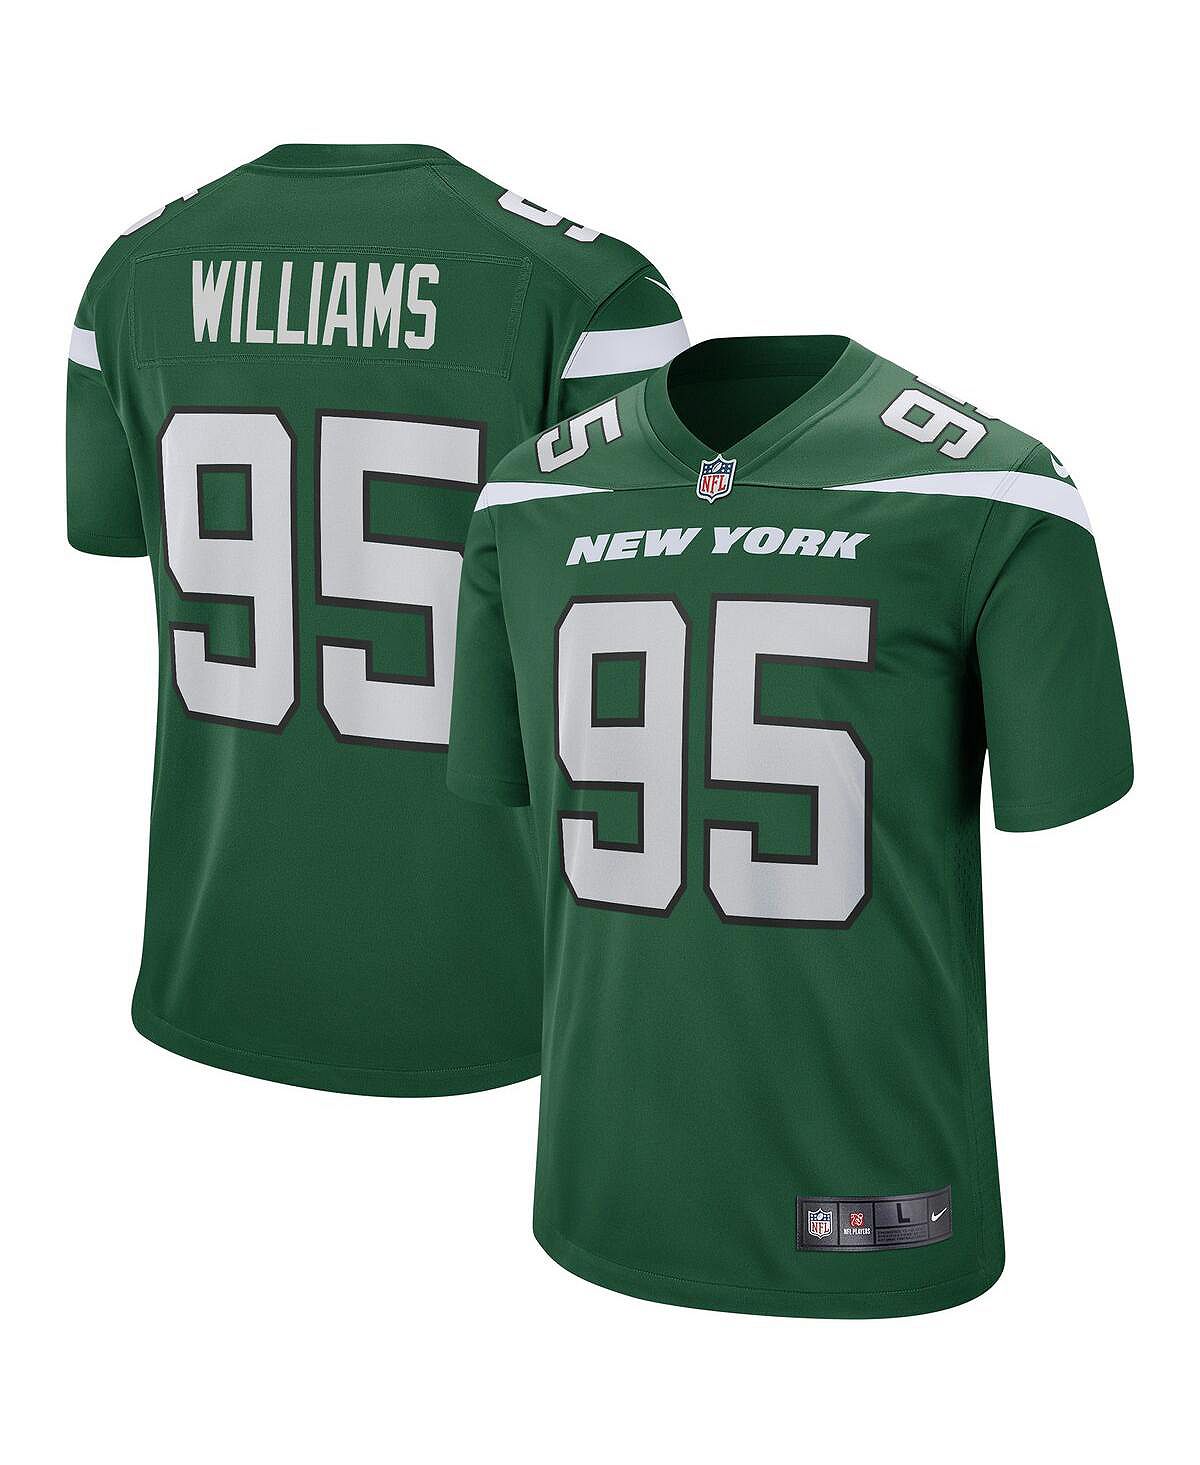 Мужская футболка quinnen williams gotham green new york jets game джерси Nike, зеленый мужская зеленая футболка new york jets legend icon performance nike